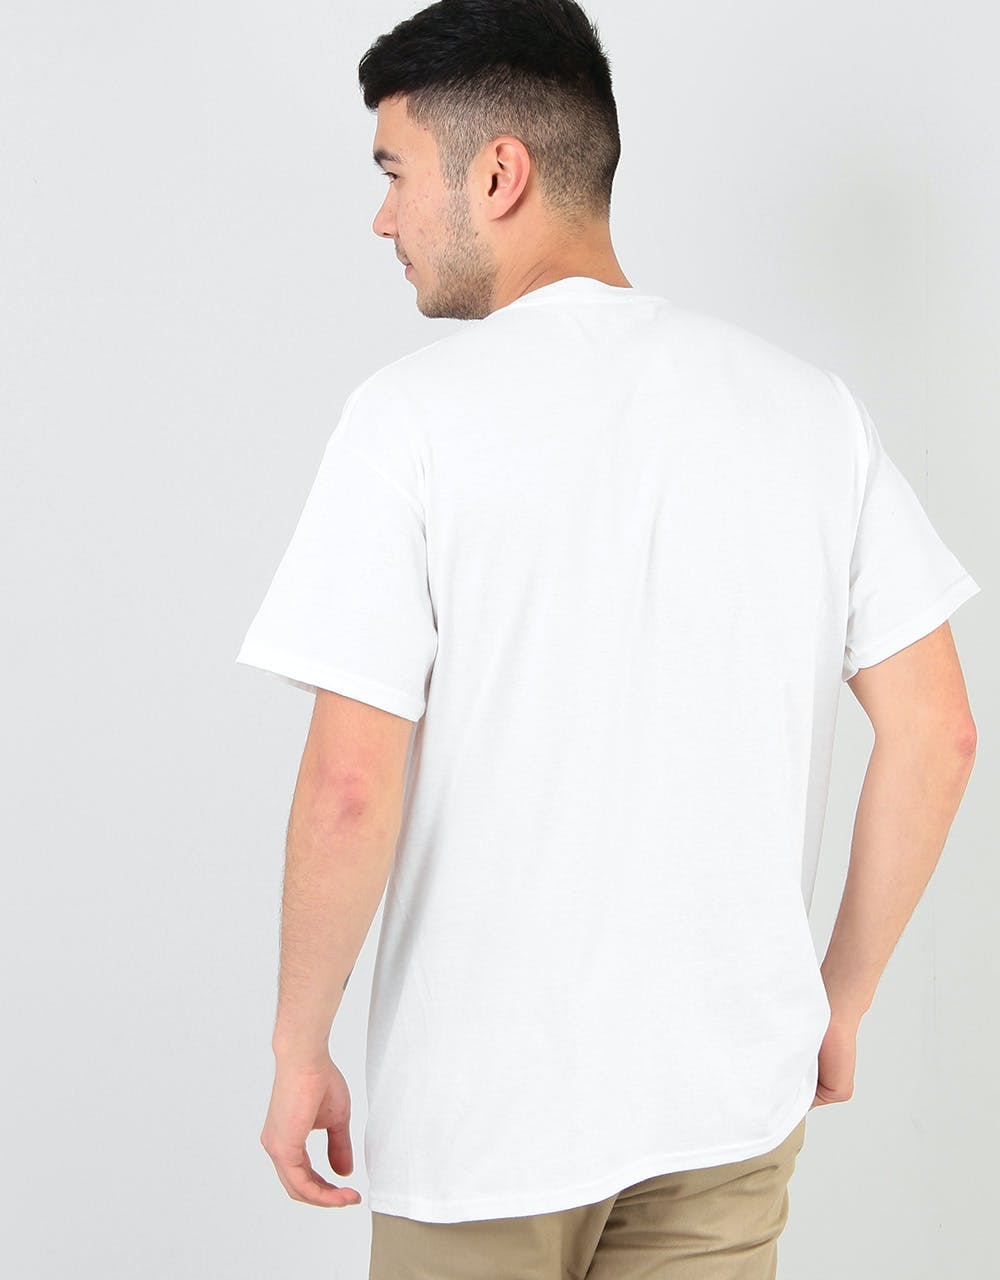 Colourblind Circular T-Shirt - White